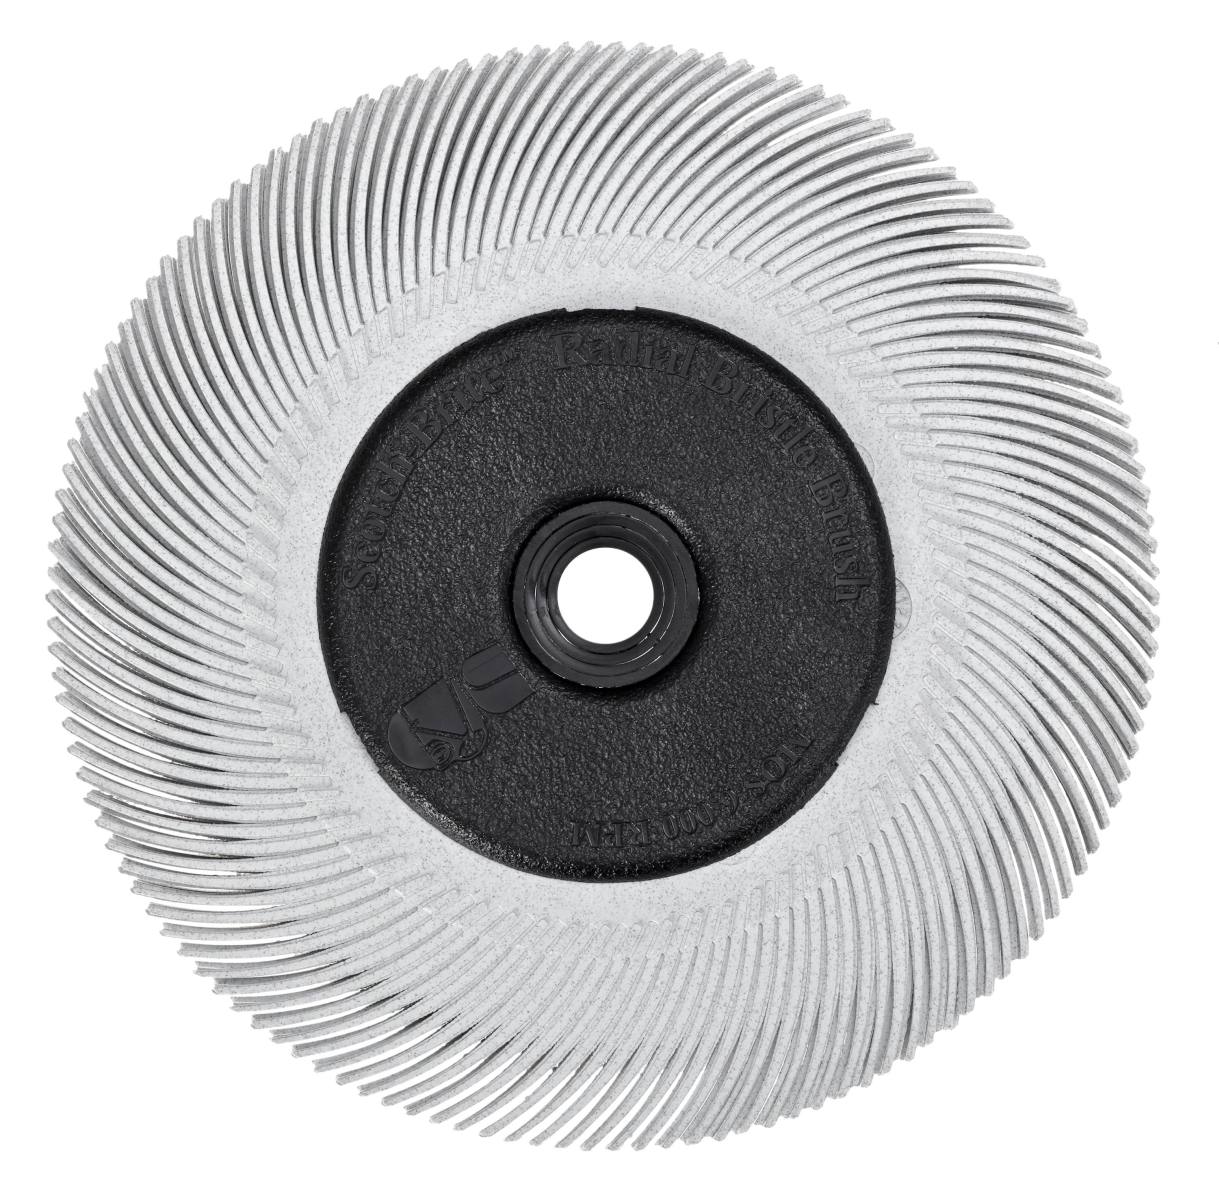 3M Scotch-Brite Radial Bristle Disc BB-ZB mit Flansch, weiß, 152,4 mm, P120, Typ C #33212